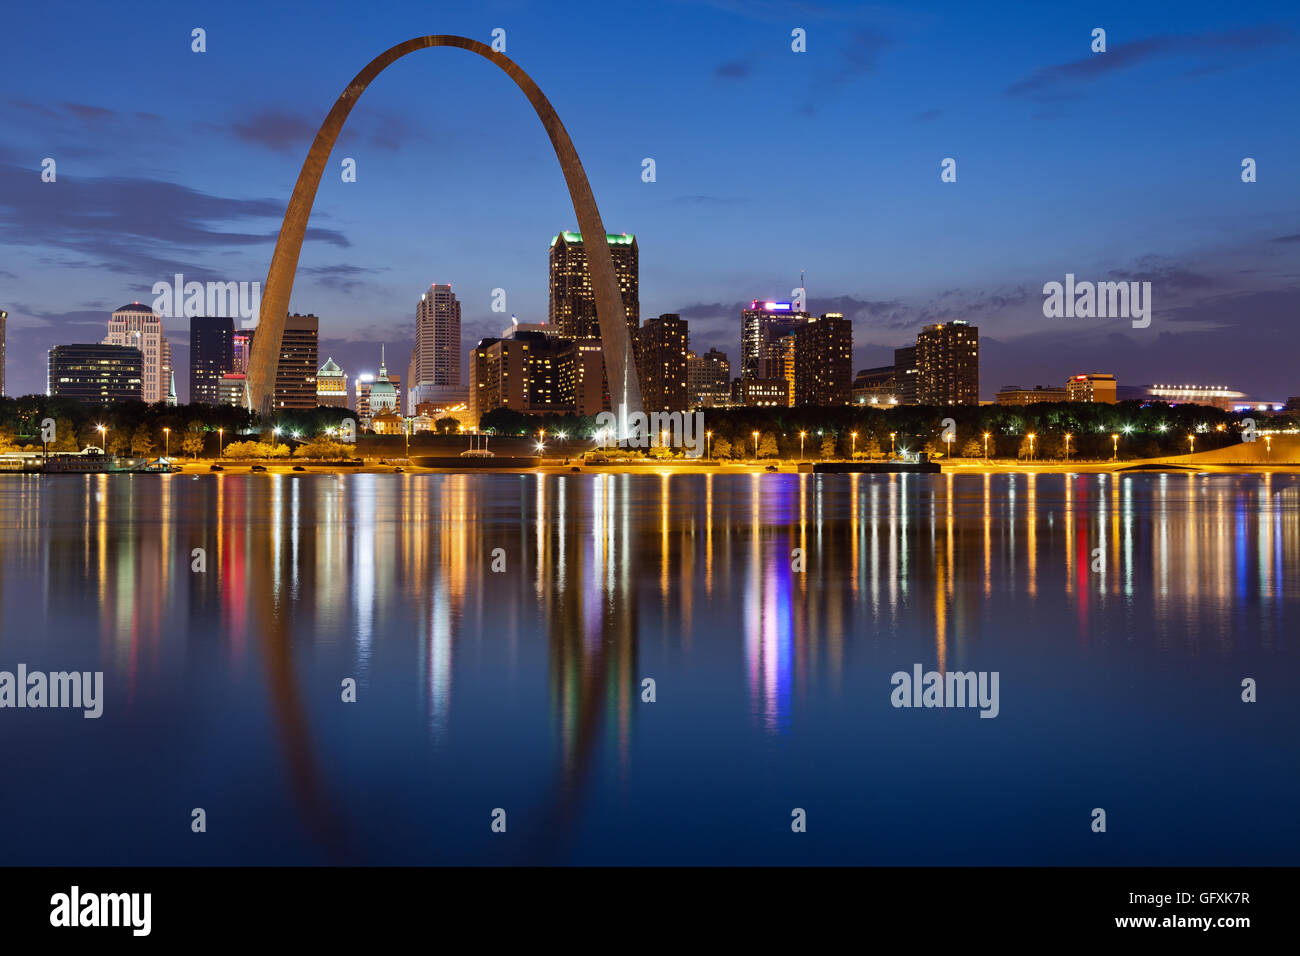 Skyline der Stadt St. Louis. Bild von St. Louis downtown mit Gateway Arch in der Dämmerung. Stockfoto